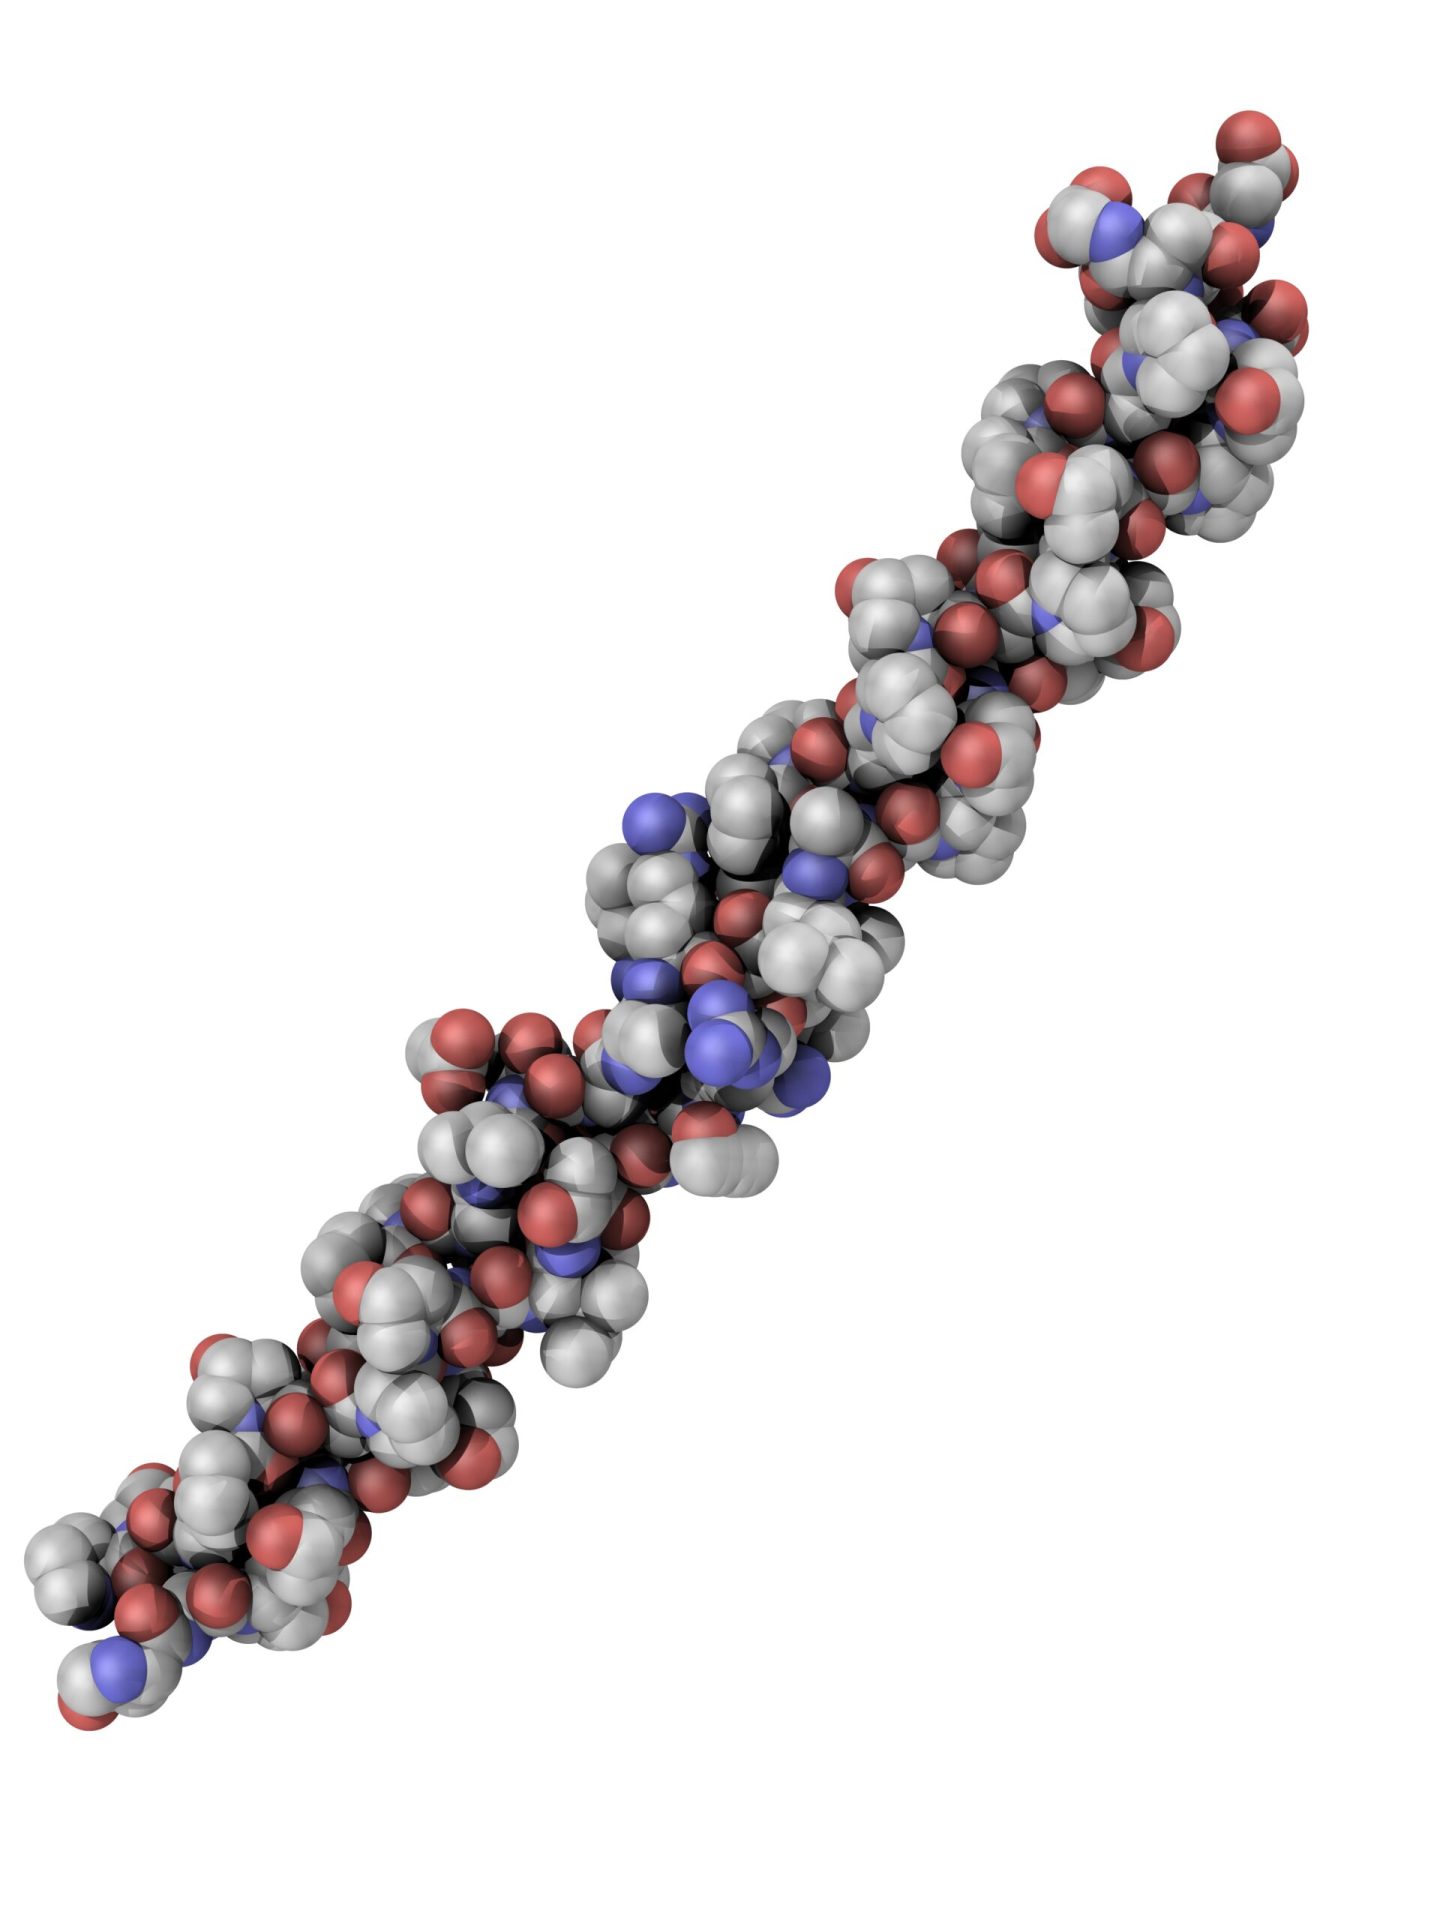 Structura moleculara compacta a colagenului - a se compara cu structura prezentata mai jos